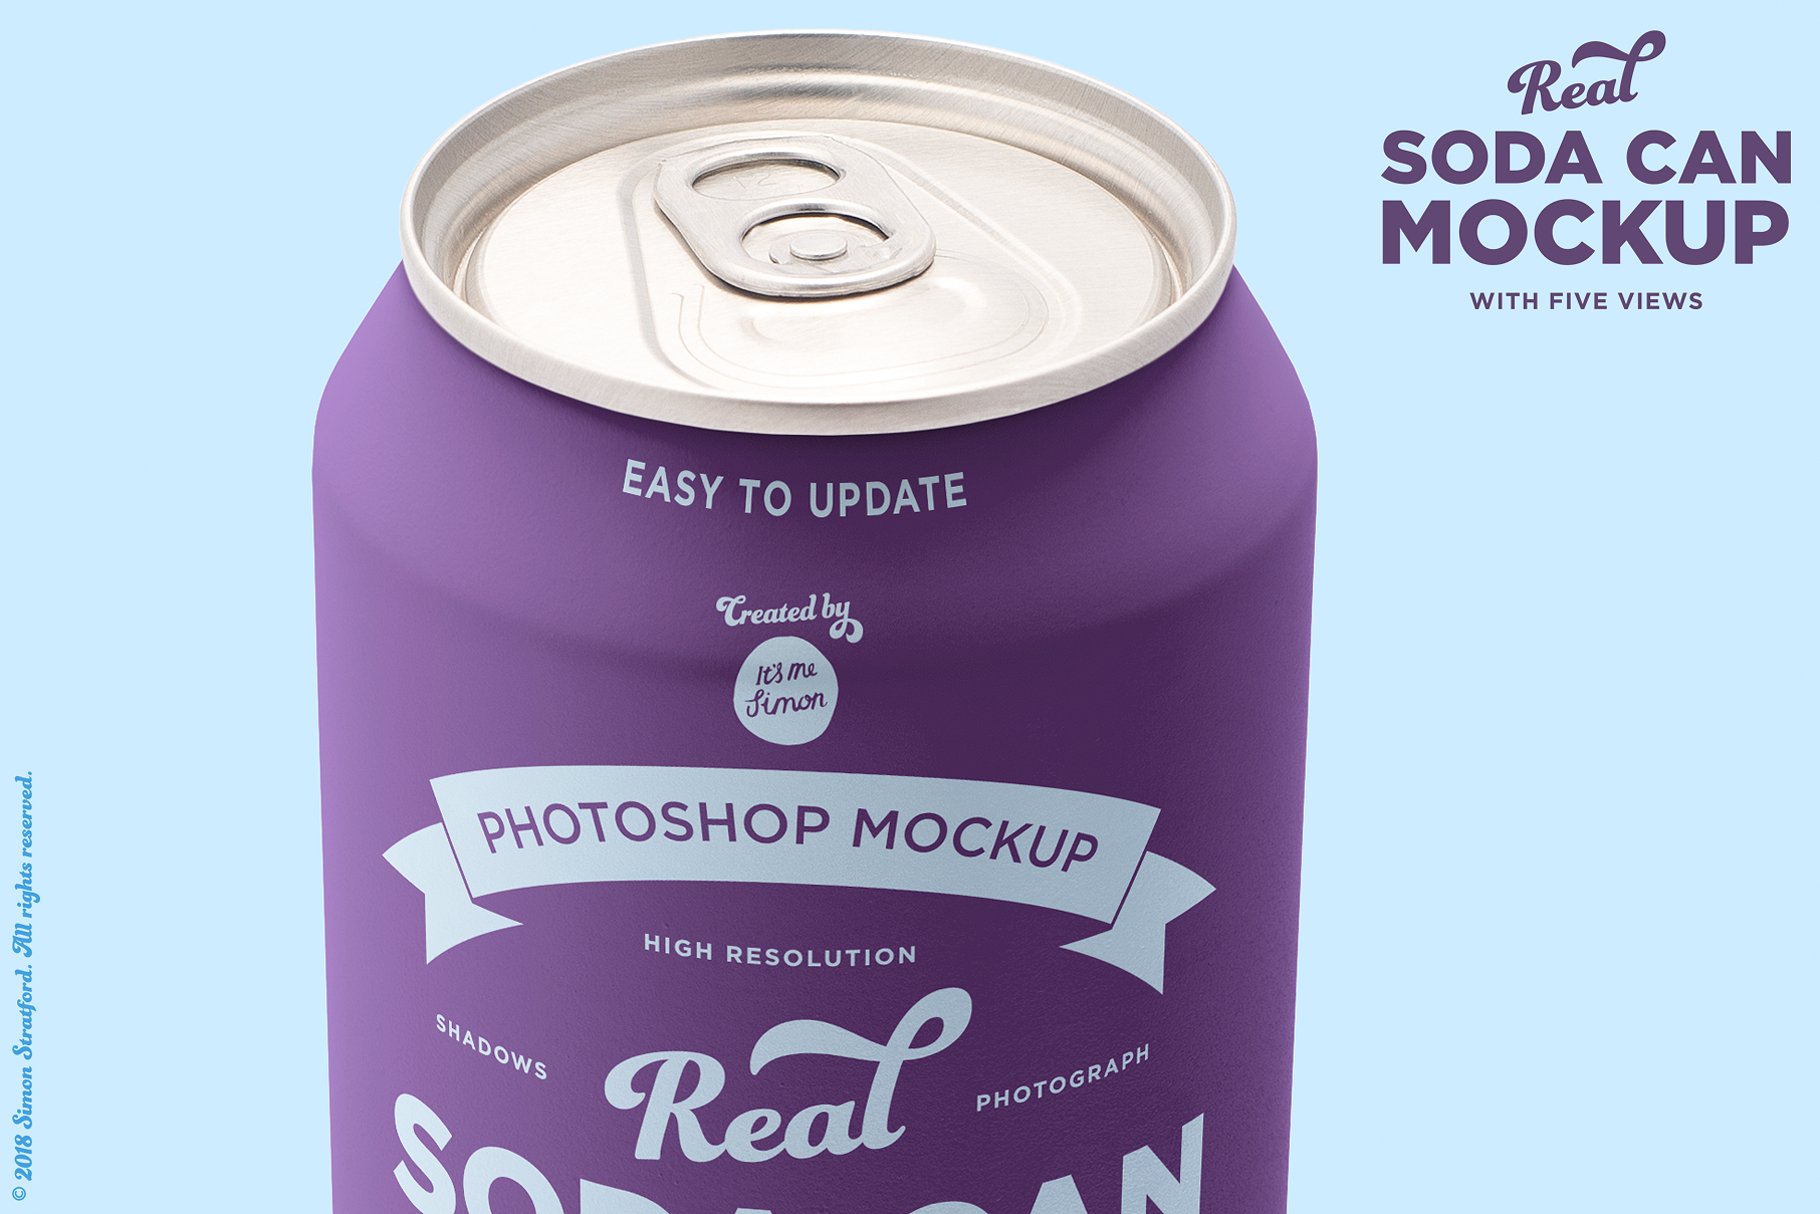 苏打水饮料易拉罐外观设计样机 Real soda can mockup for photoshop插图(4)